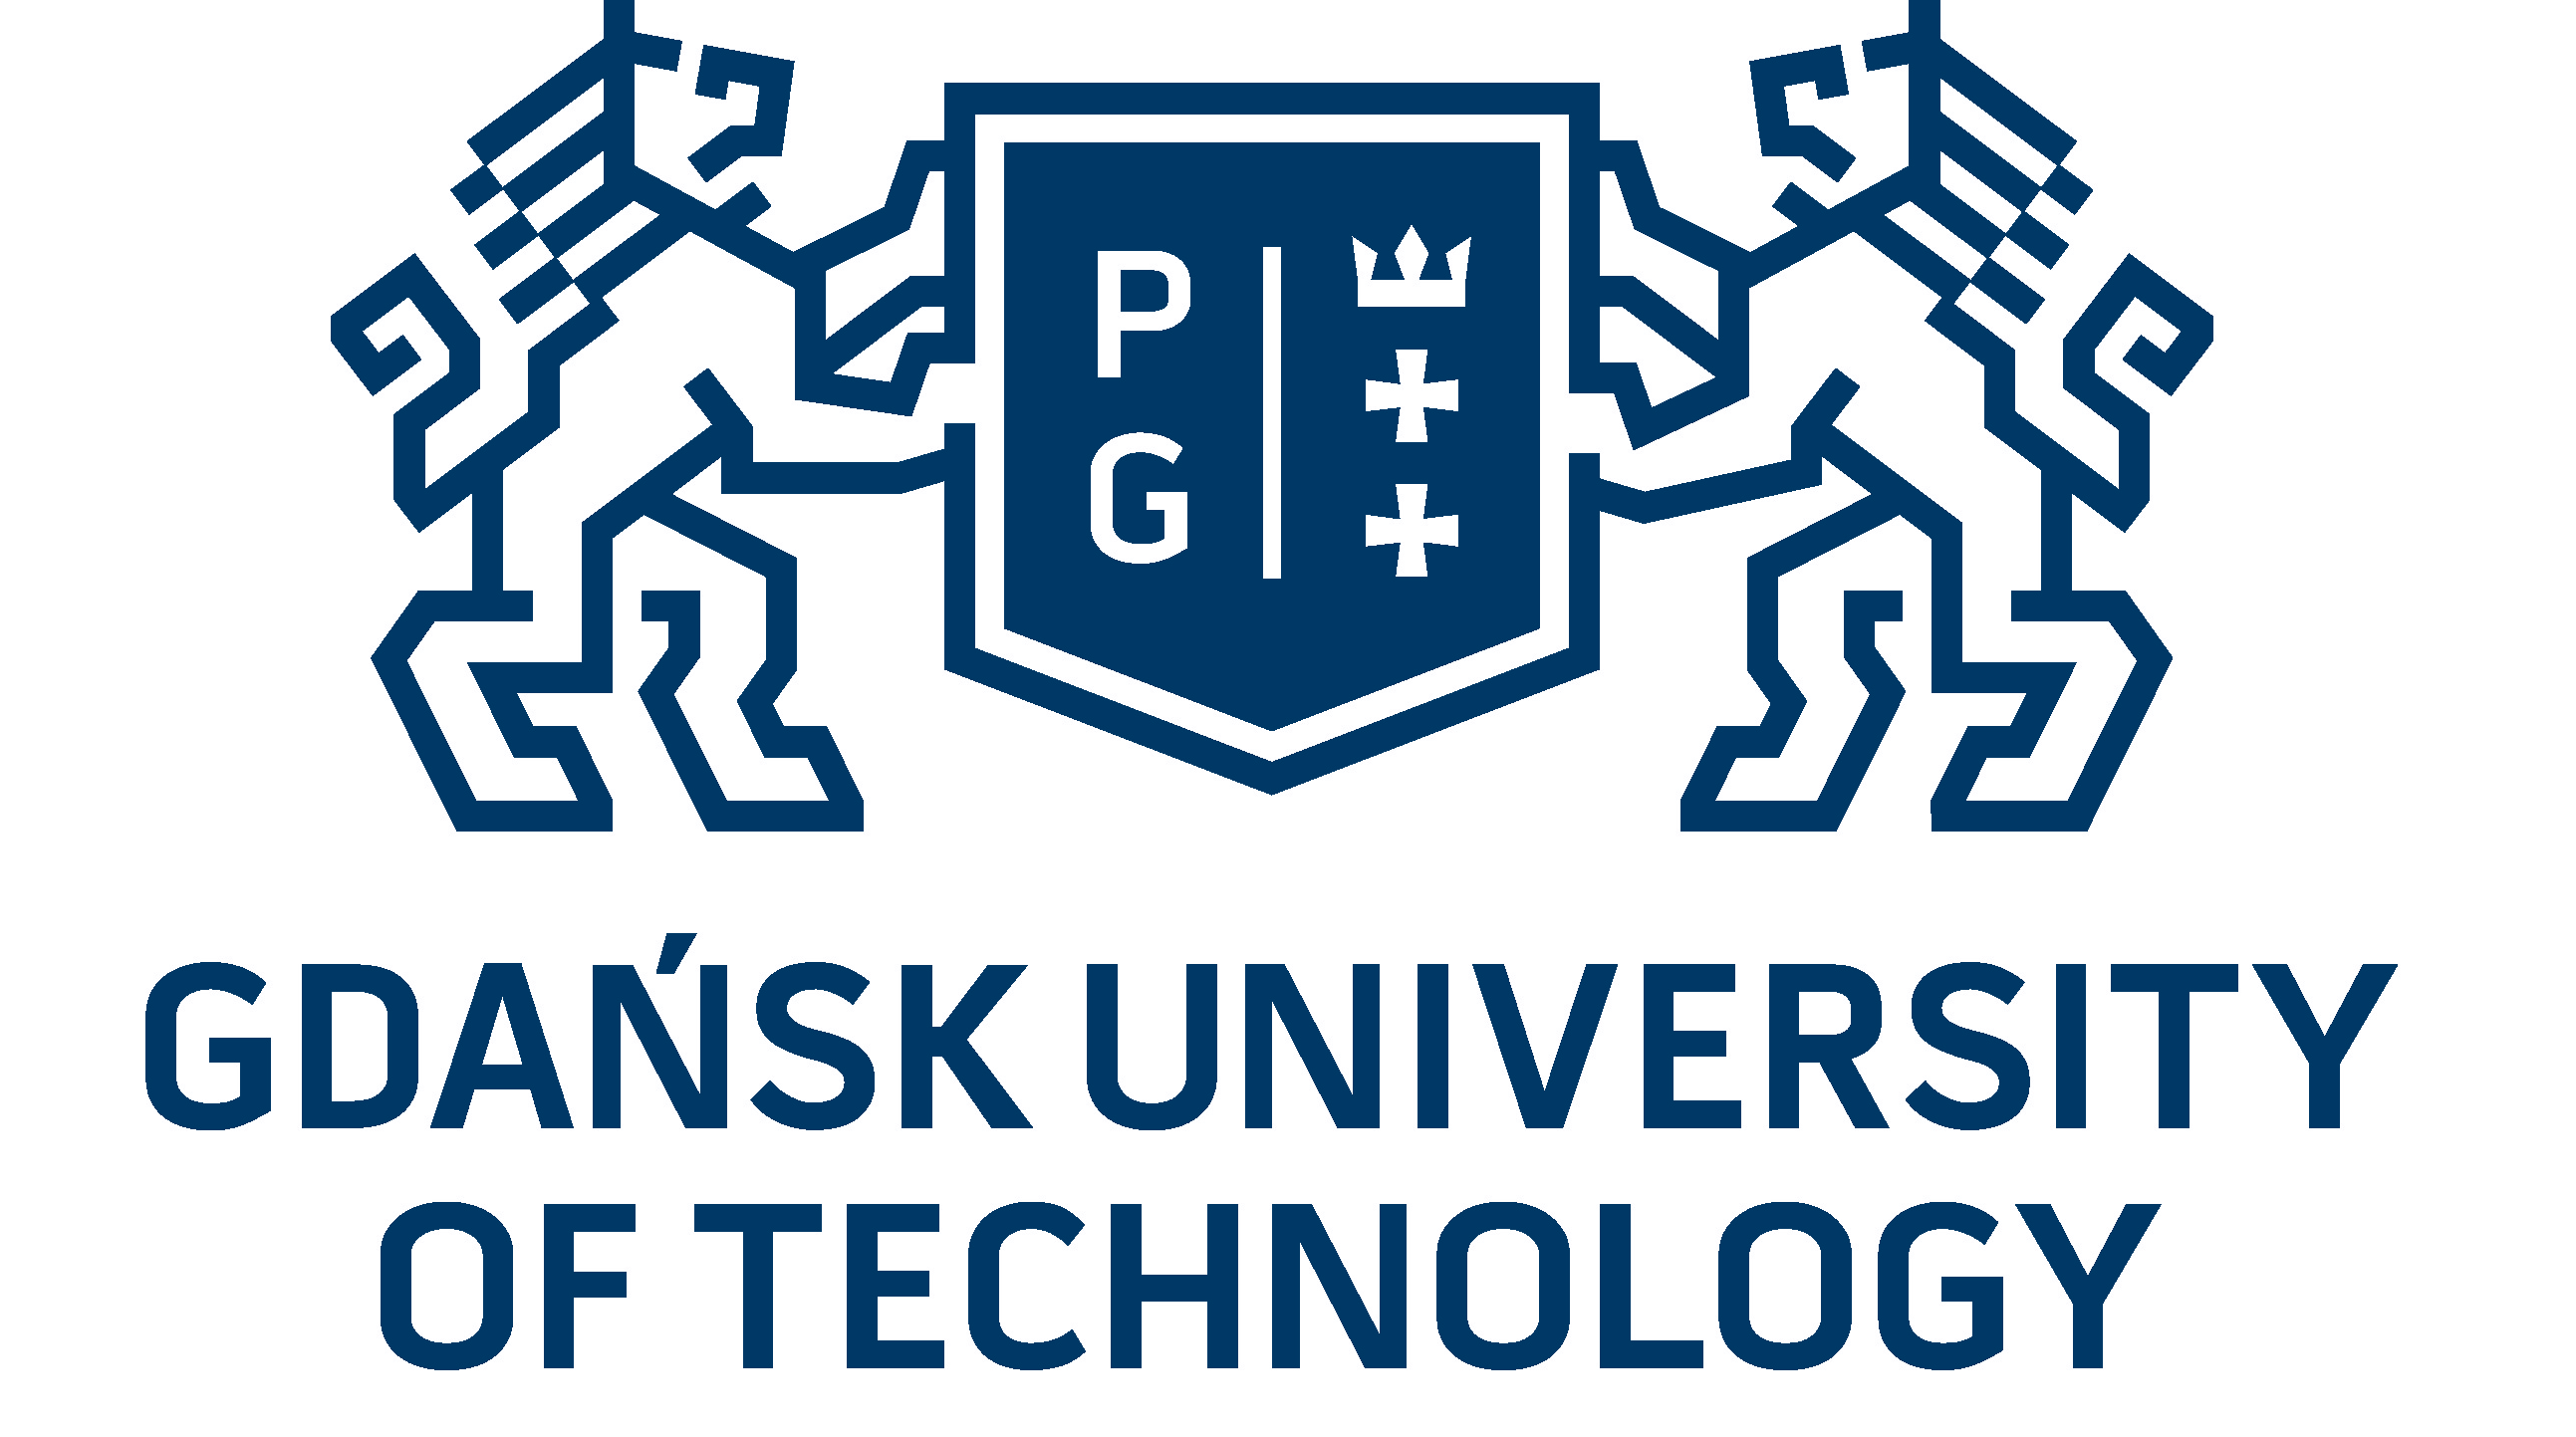 Gdańsk University od Technology